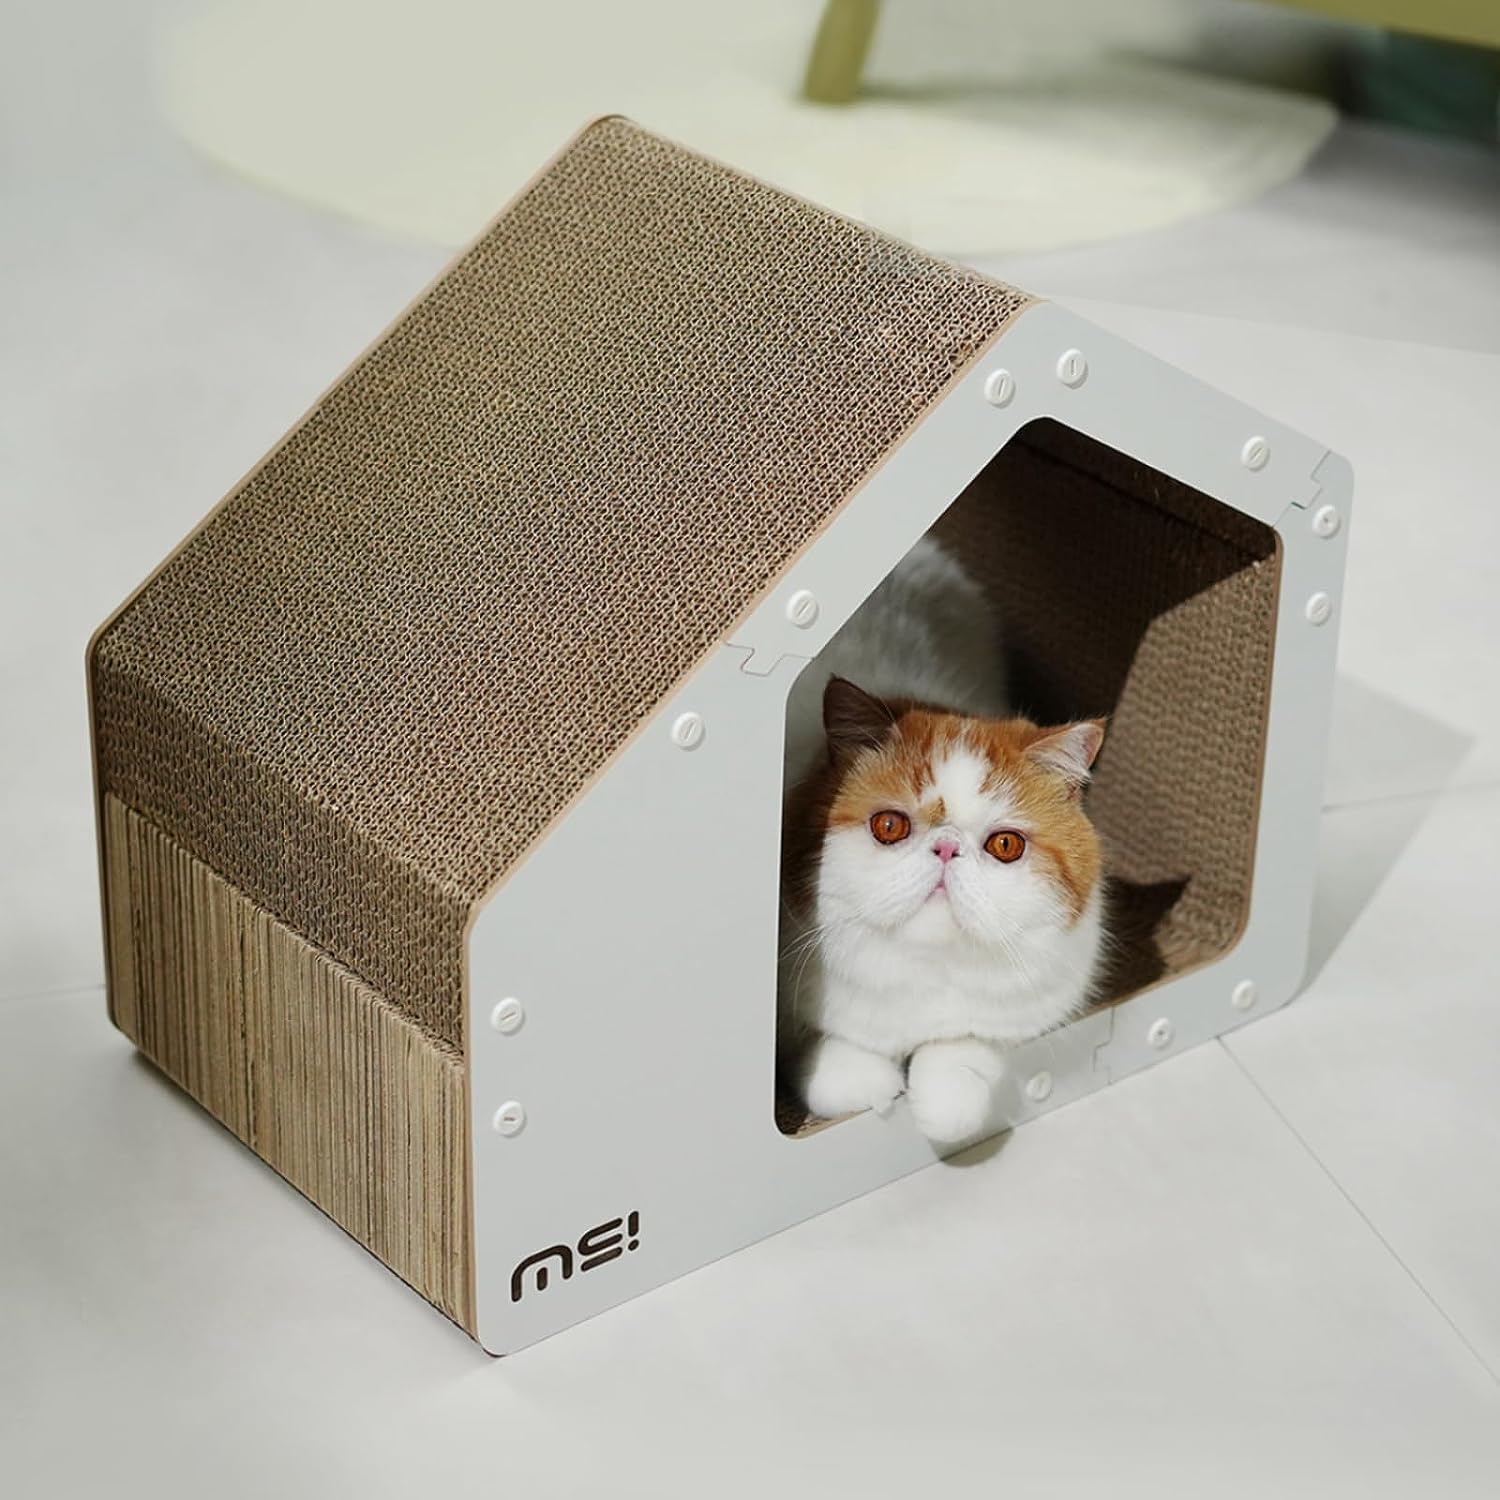 MS!MAKE Cat Scratcher Cardboard House 